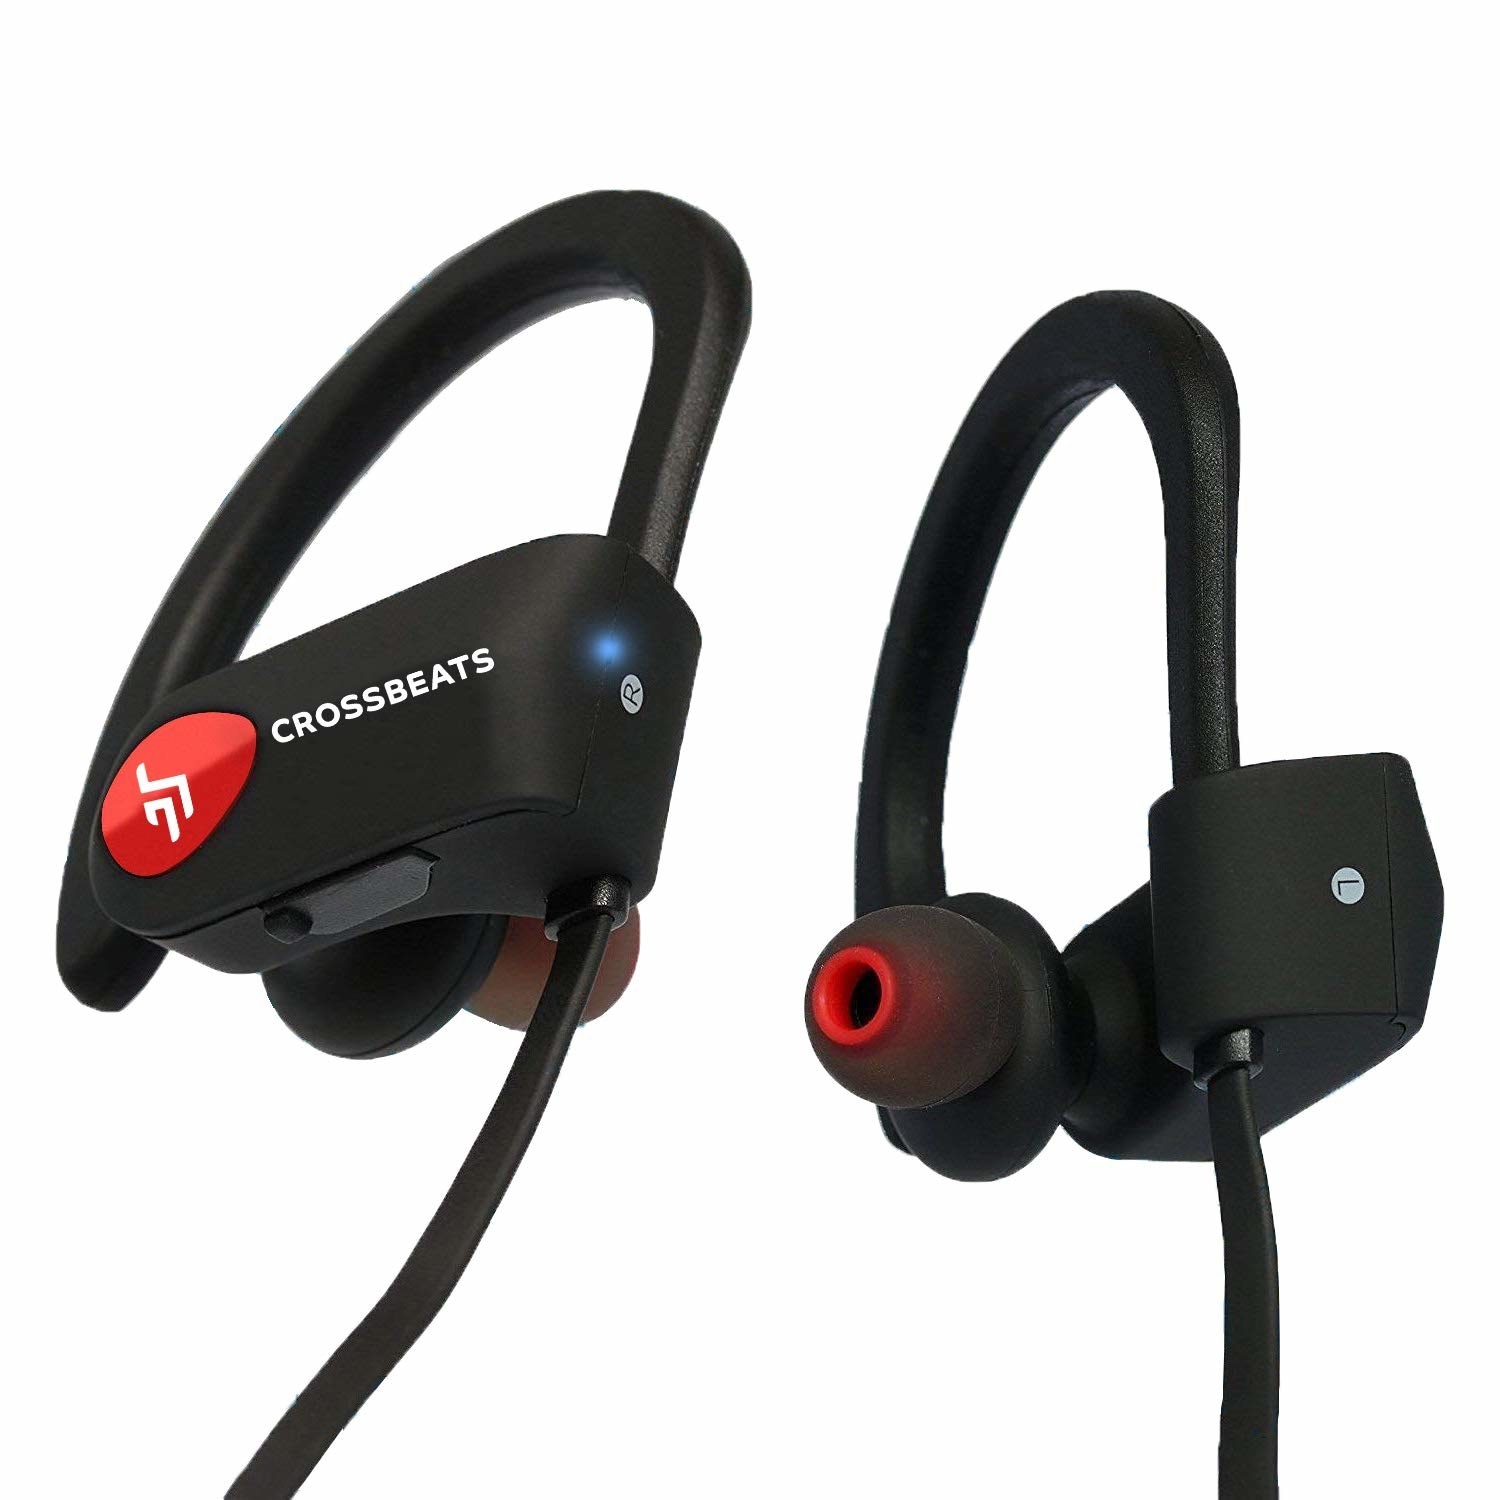 crossbeats air true wireless earbuds review